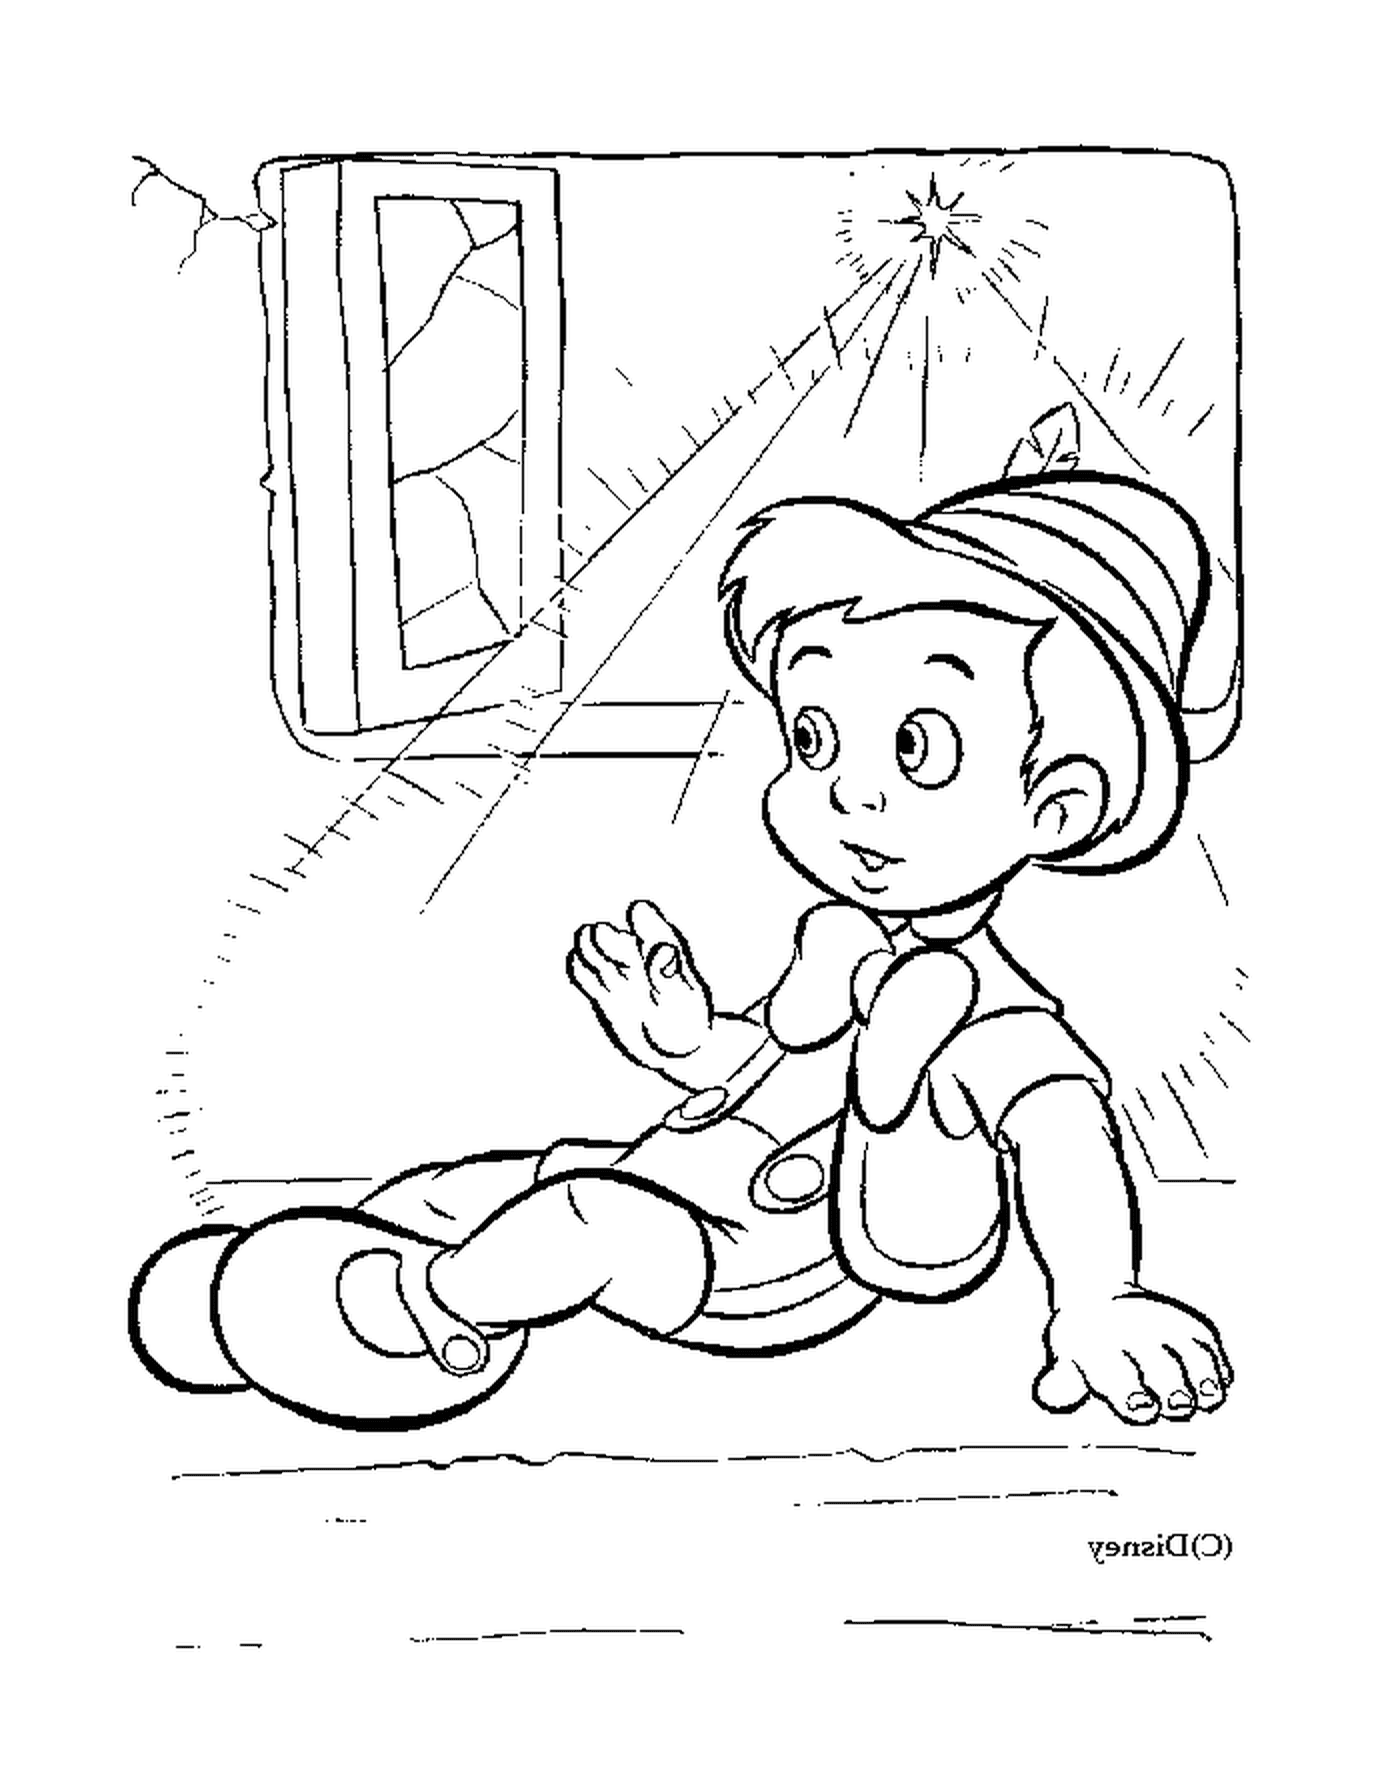   Pinocchio près de la fenêtre 